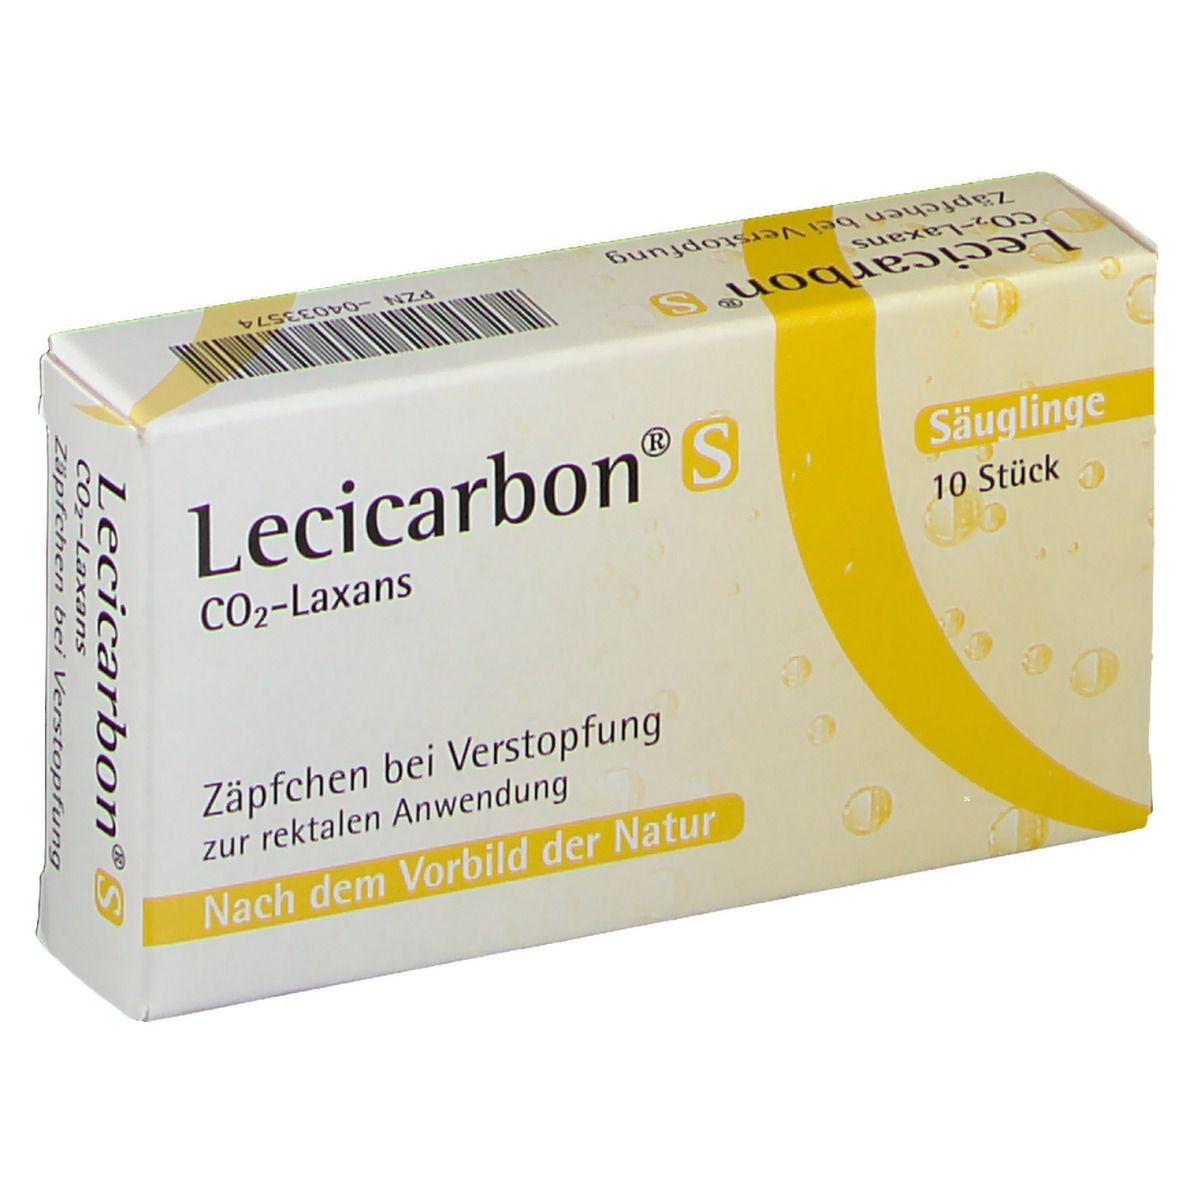 Lecicarbon® S Co2-Laxans für Säuglinge